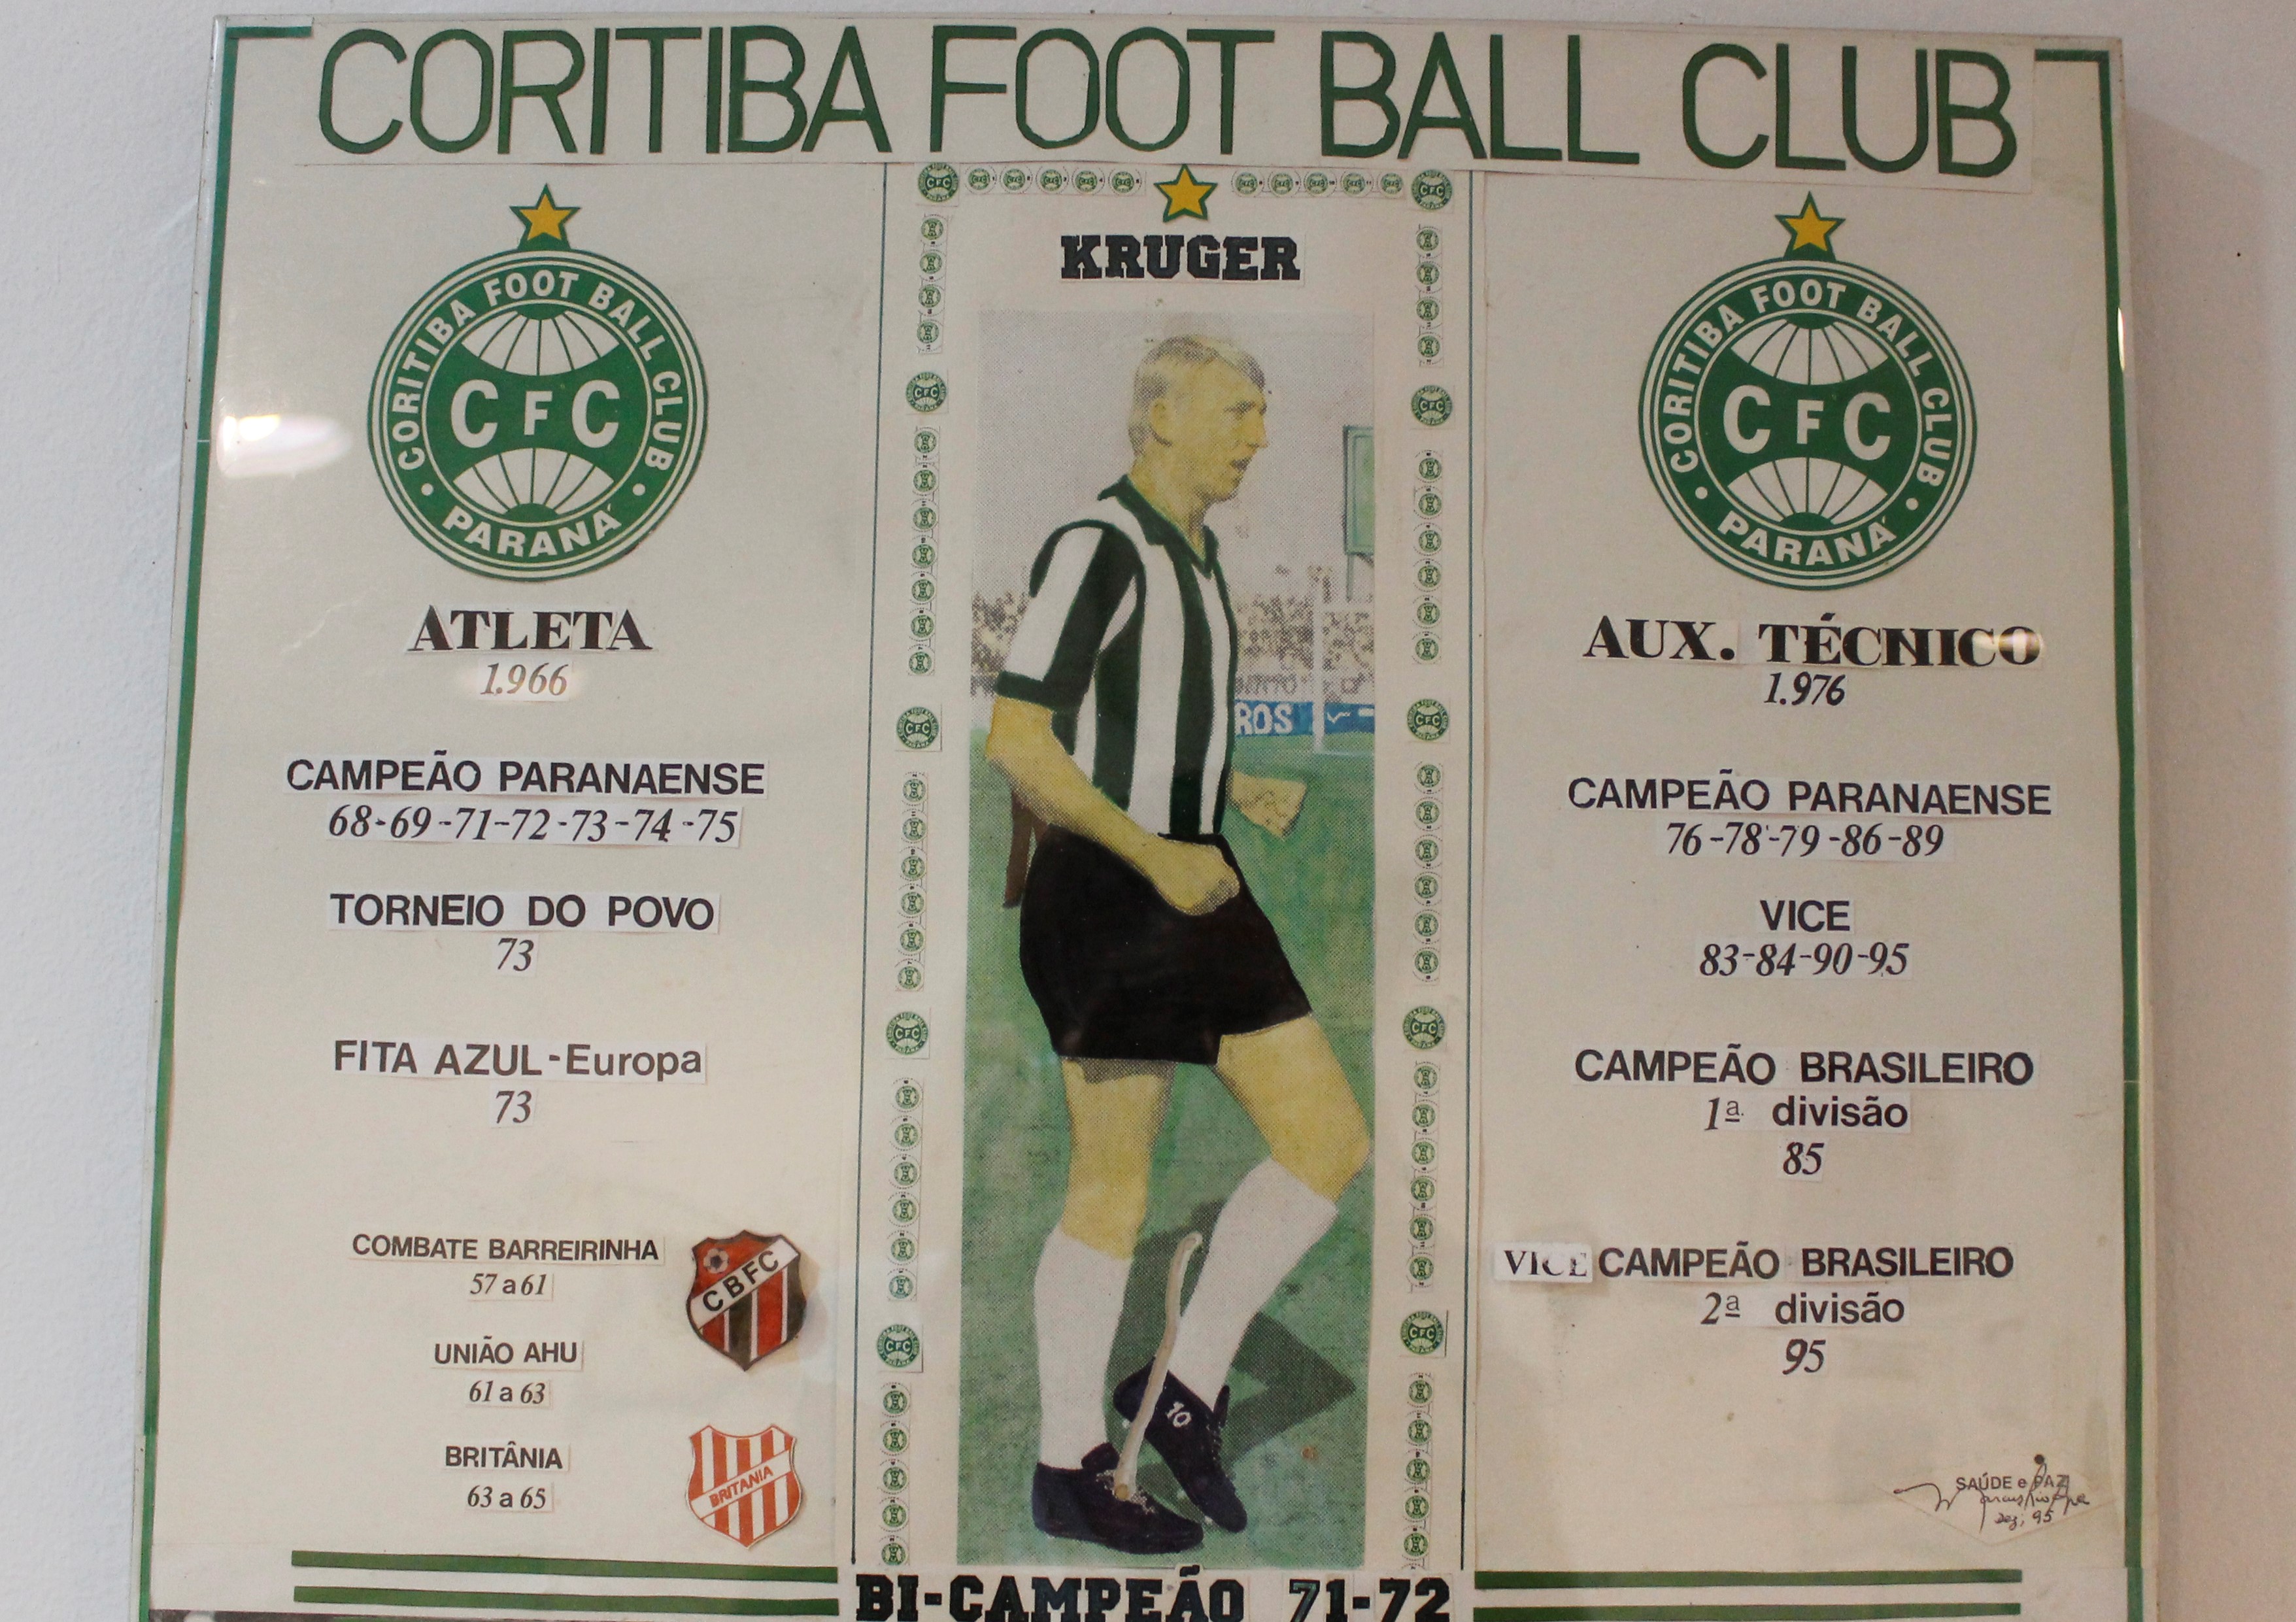 Montagem sobre Dirceu Krüger e sua trajetória em 1979 quando o Coritiba Foot Ball Club sagrou-se bicampeão.